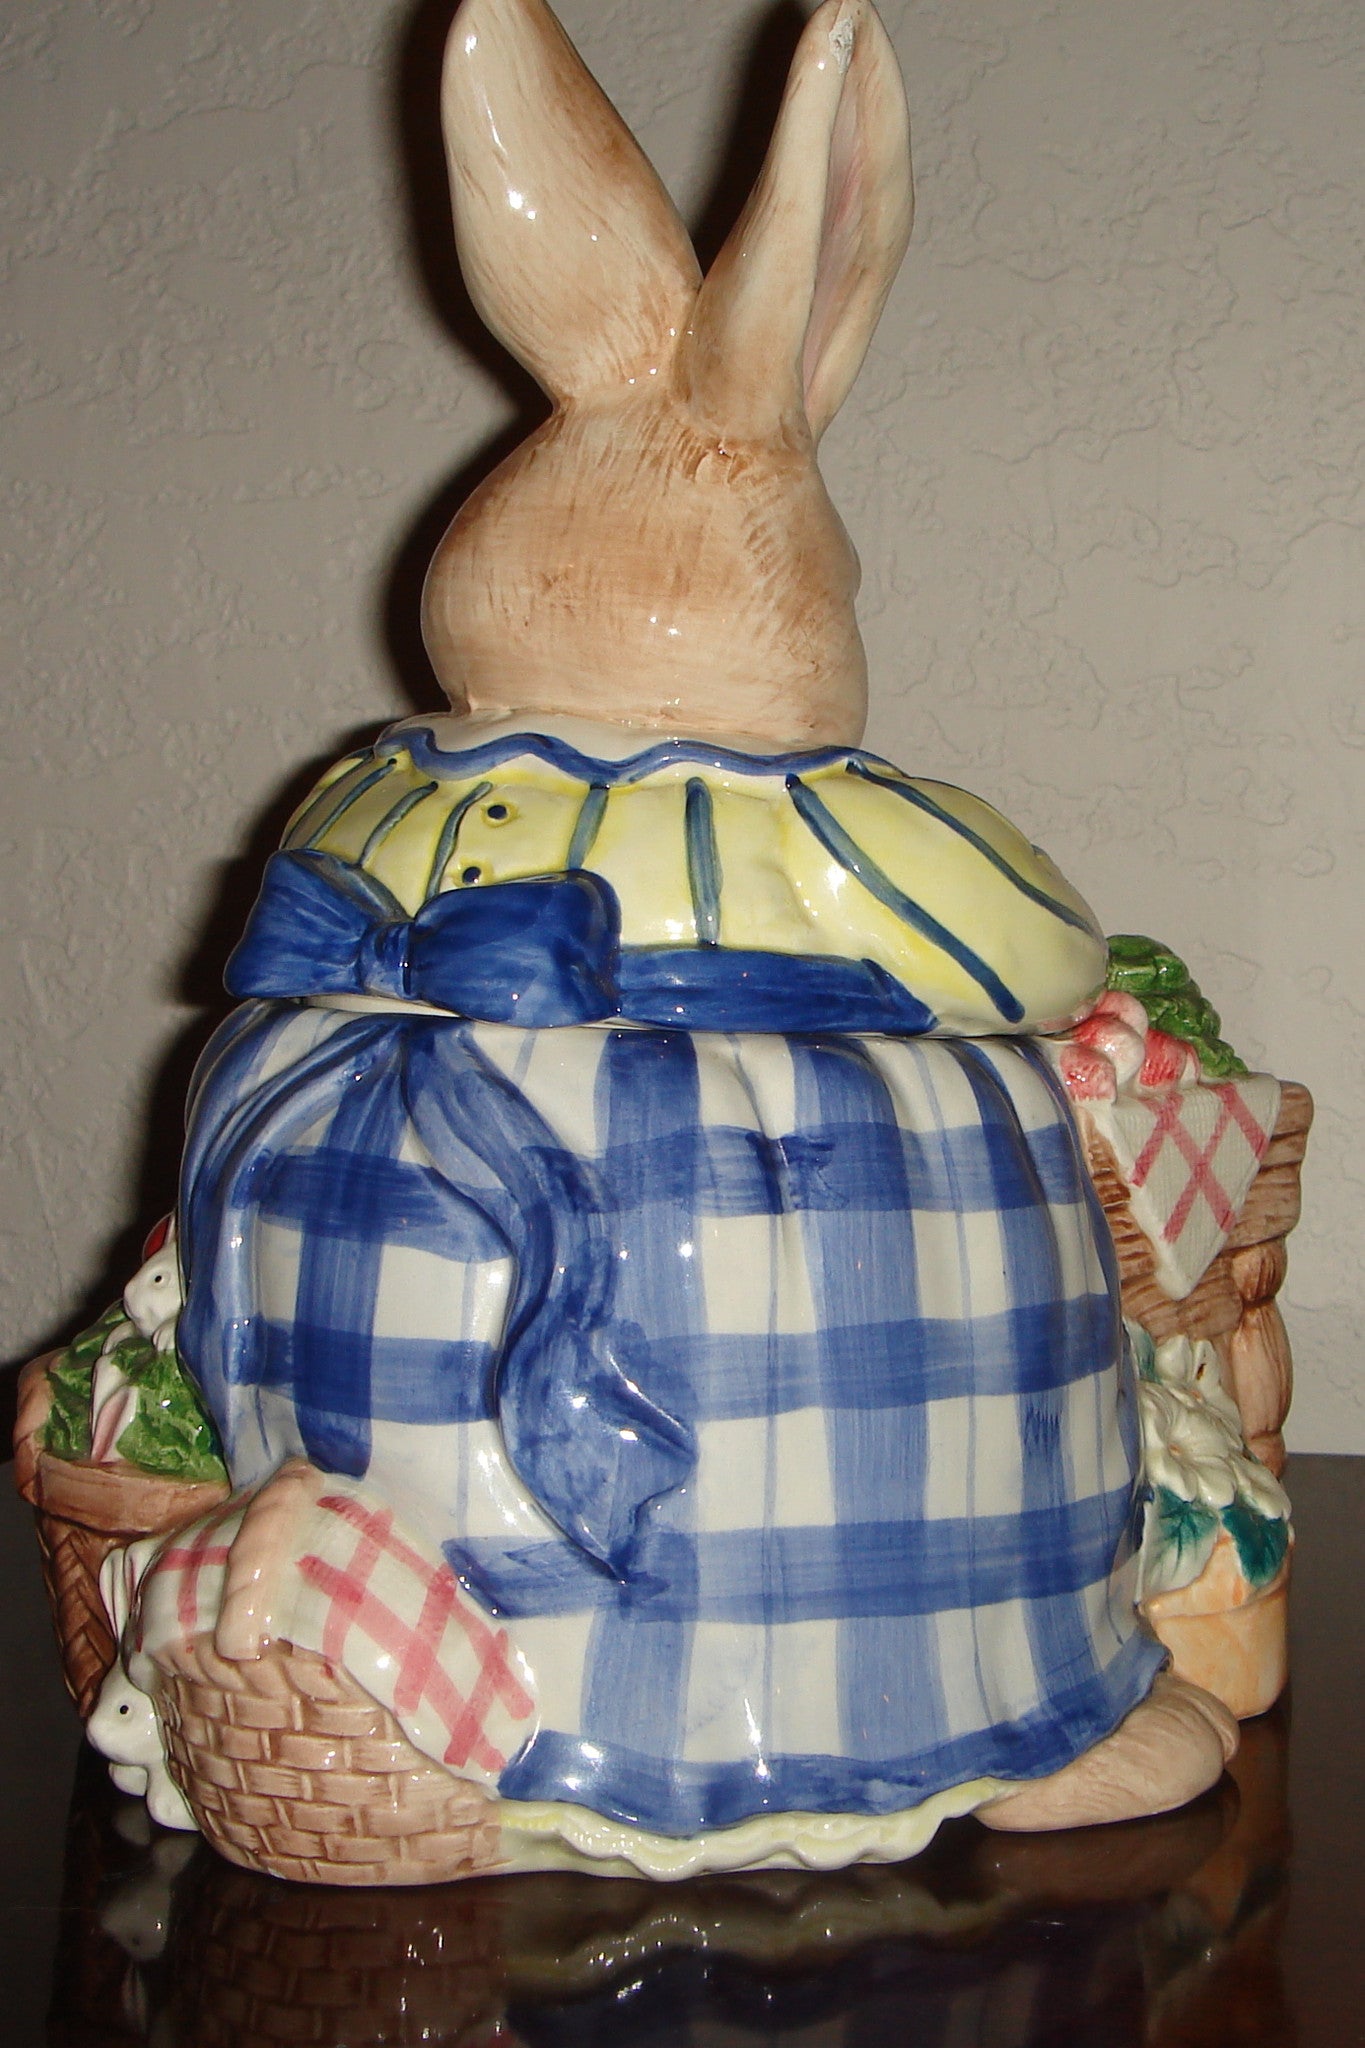 Fitz & Floyd 1993 "Mother Rabbit Preparing Dinner" Cookie Jar!